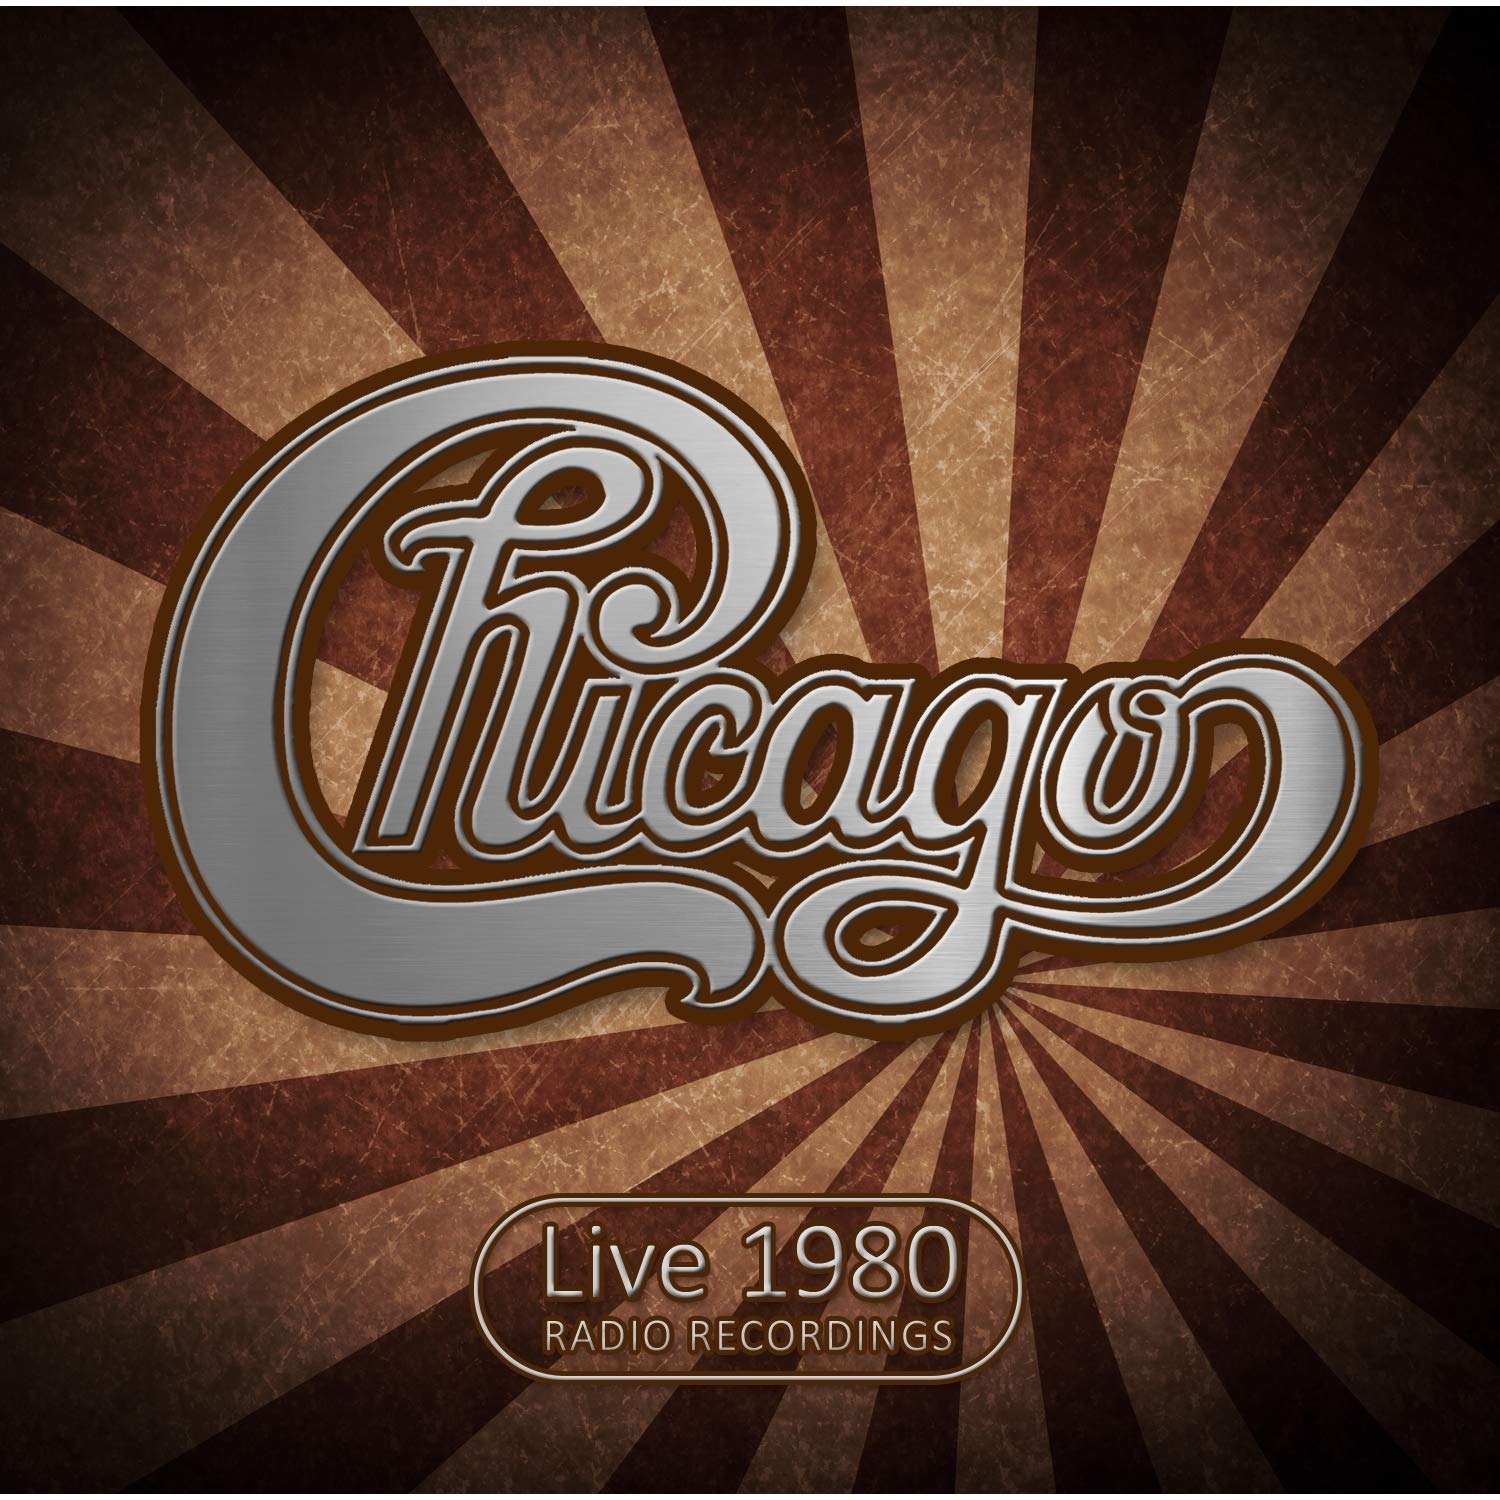 CHICAGO / シカゴ / LIVE 1980 RADIO RECORDINGS